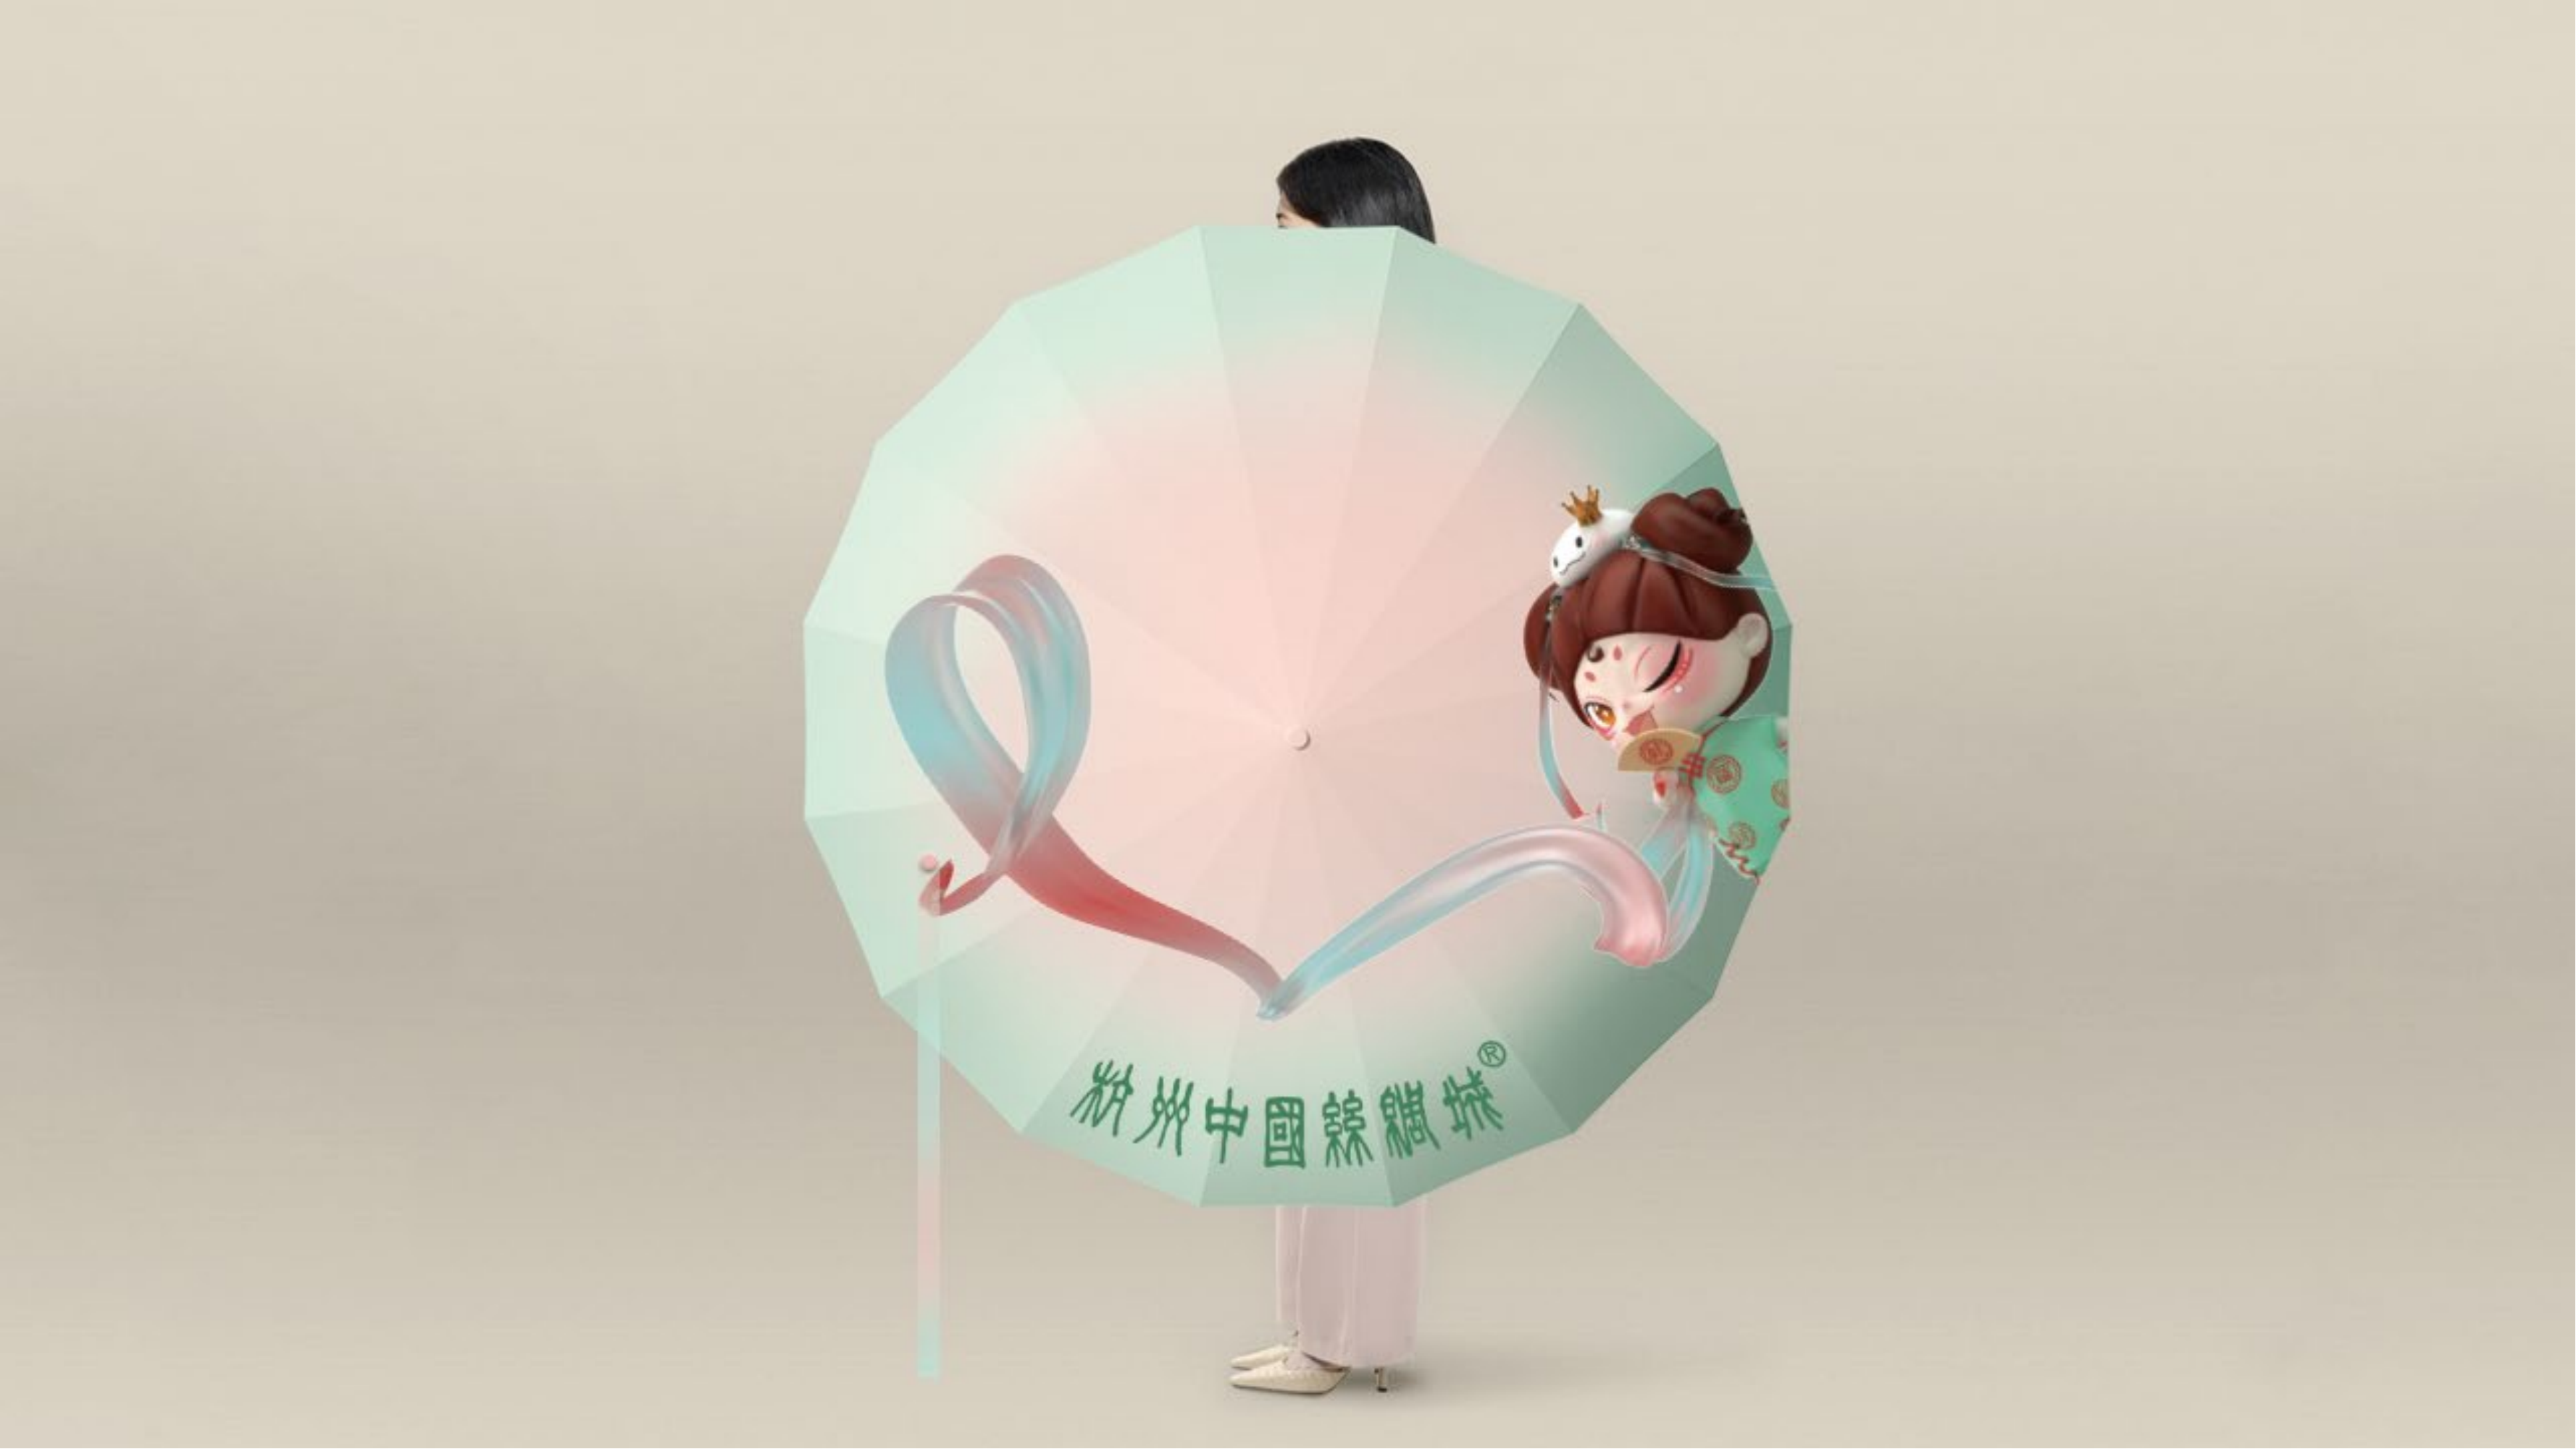 【杭州中国丝绸城】IP设计中国风丝绸文化品牌vi设计